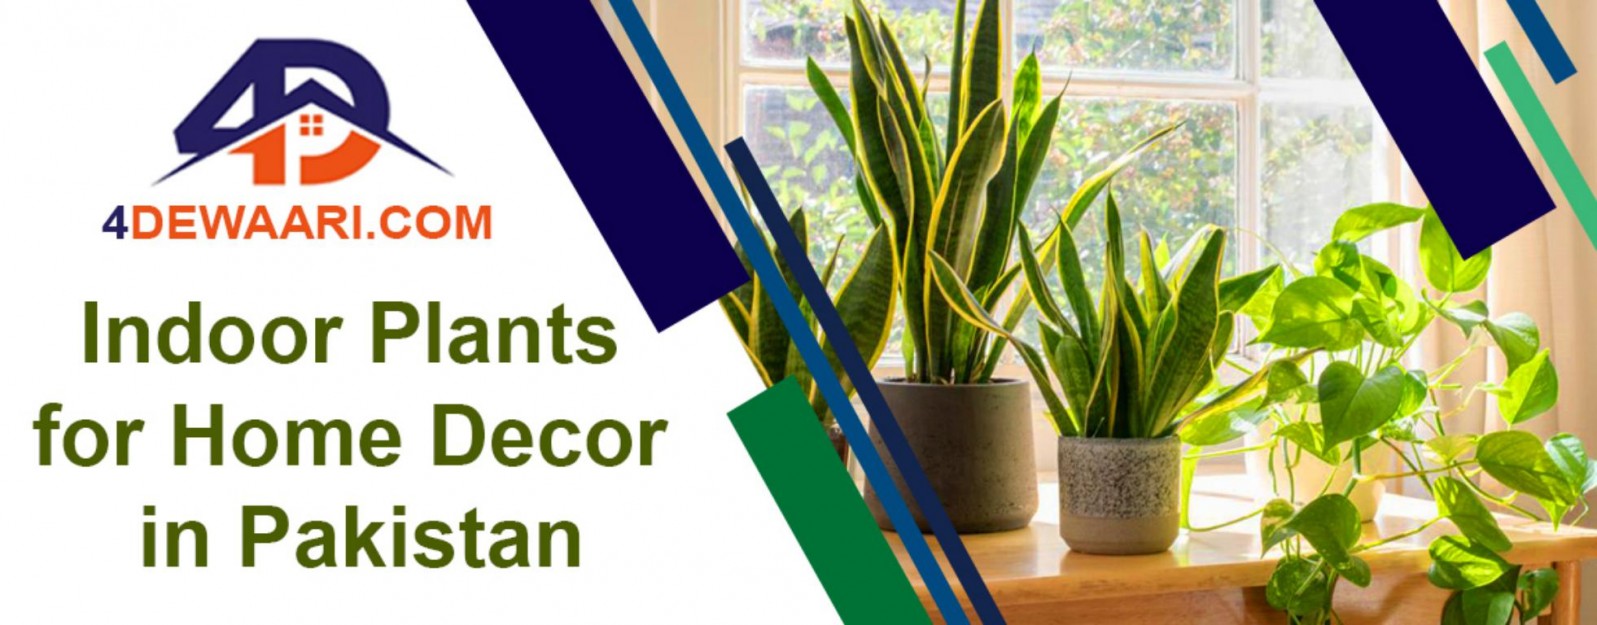 List of Popular Indoor Plants in Pakistan for Home Decor 2021